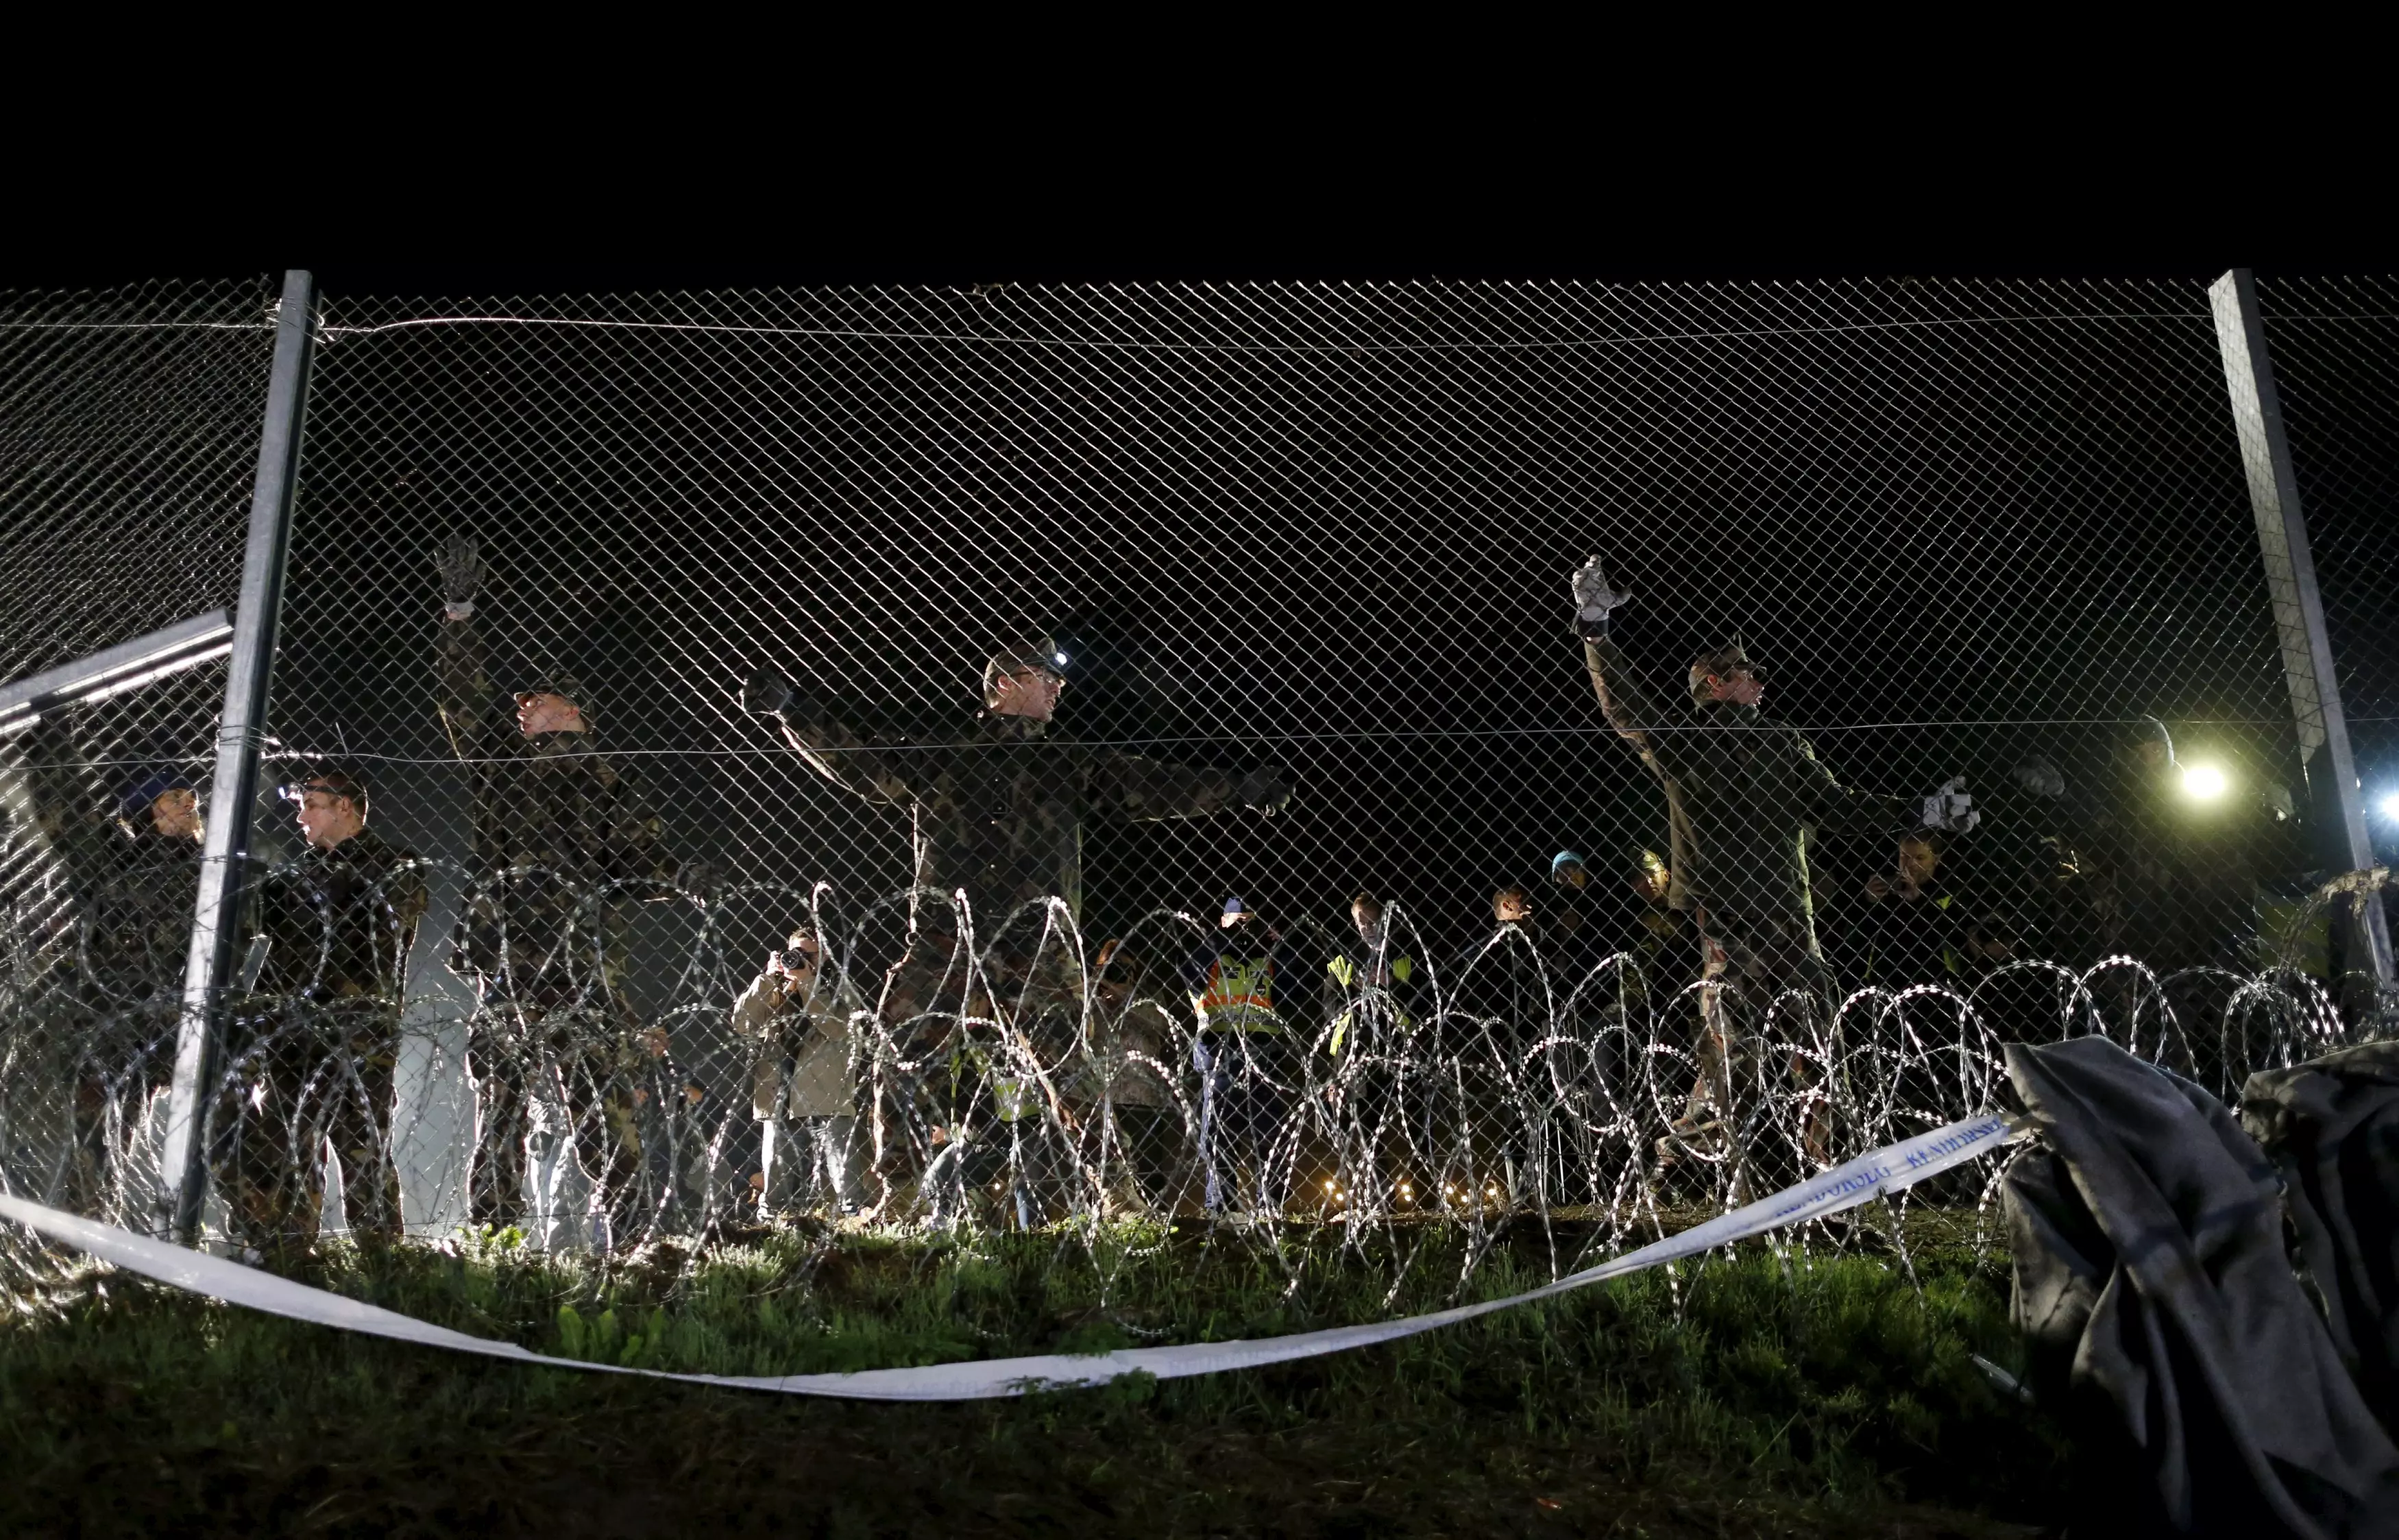 חיילים הונגרים אוטמים את הגבול